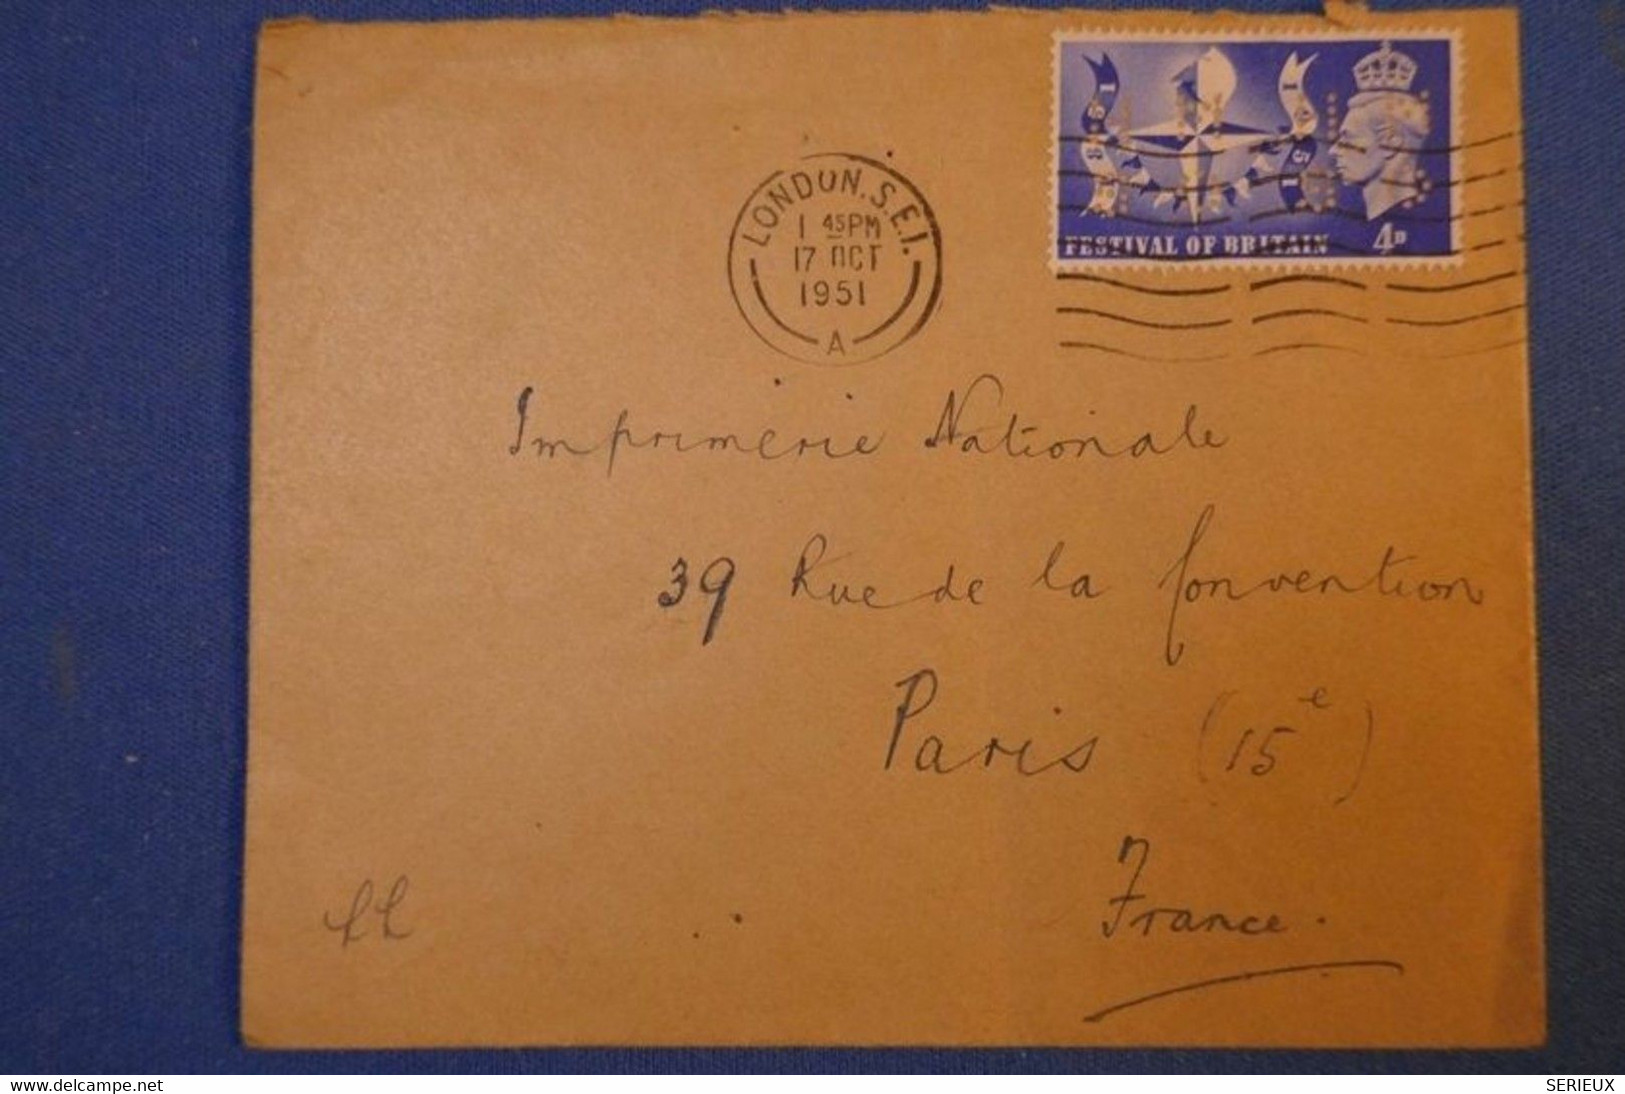 239 GRANDE BRETAGNE LETTRE 1951 DE LONDRES A PARIS R DE LA CONVENTION + TIMBRES PERFORATIONS PERFORATED - Storia Postale